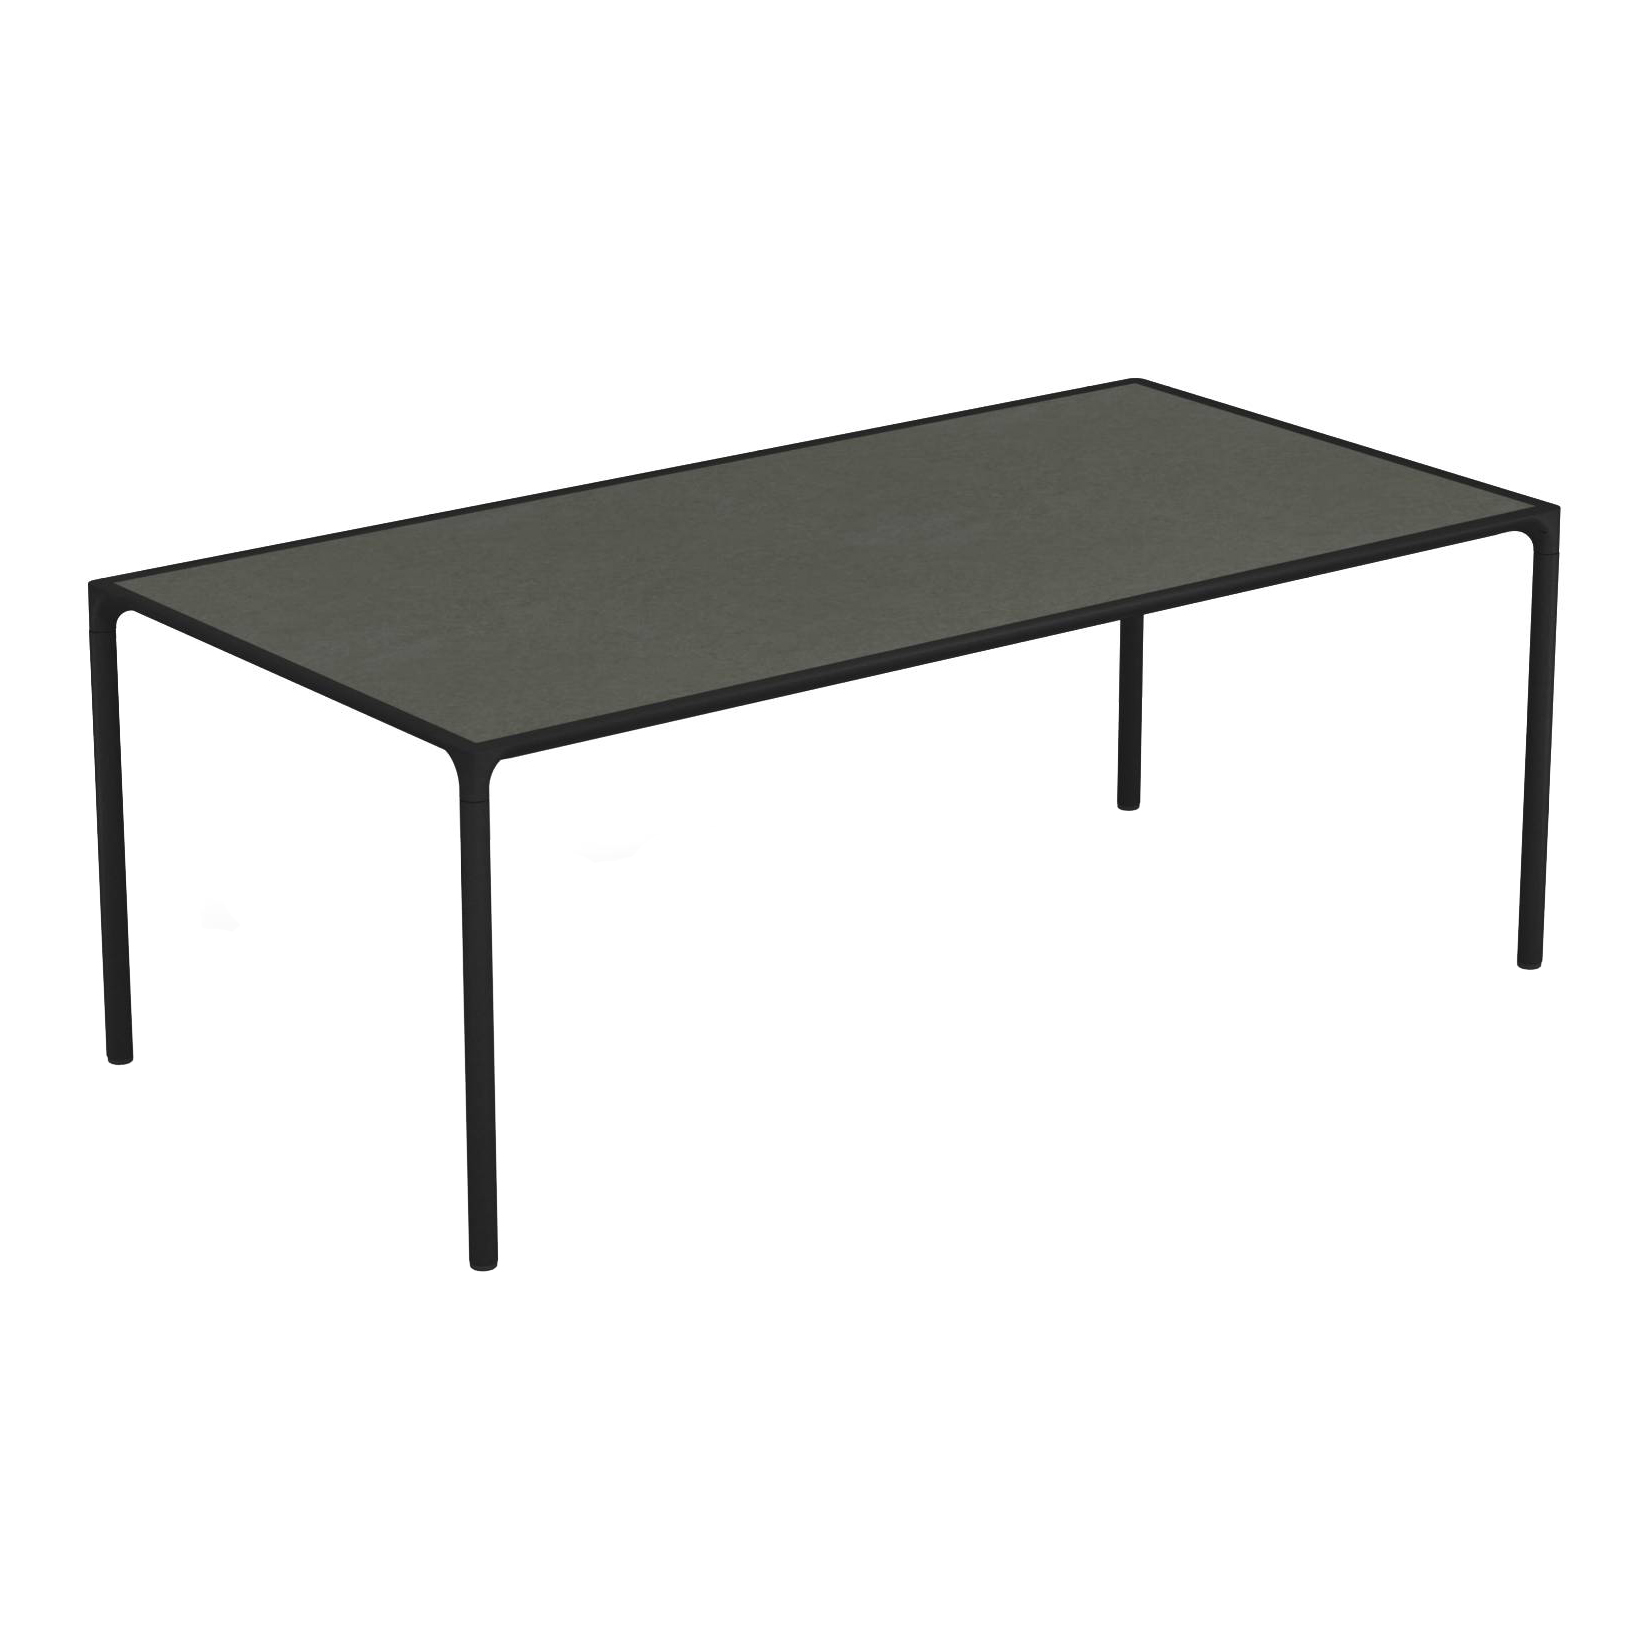 Emu - Terramare Gartenesstisch 203x103cm - dunkelgrau/Tischplatte Steinzeug/LxBxH 203x103x74cm/Gestell Aluminium schwarz von Emu